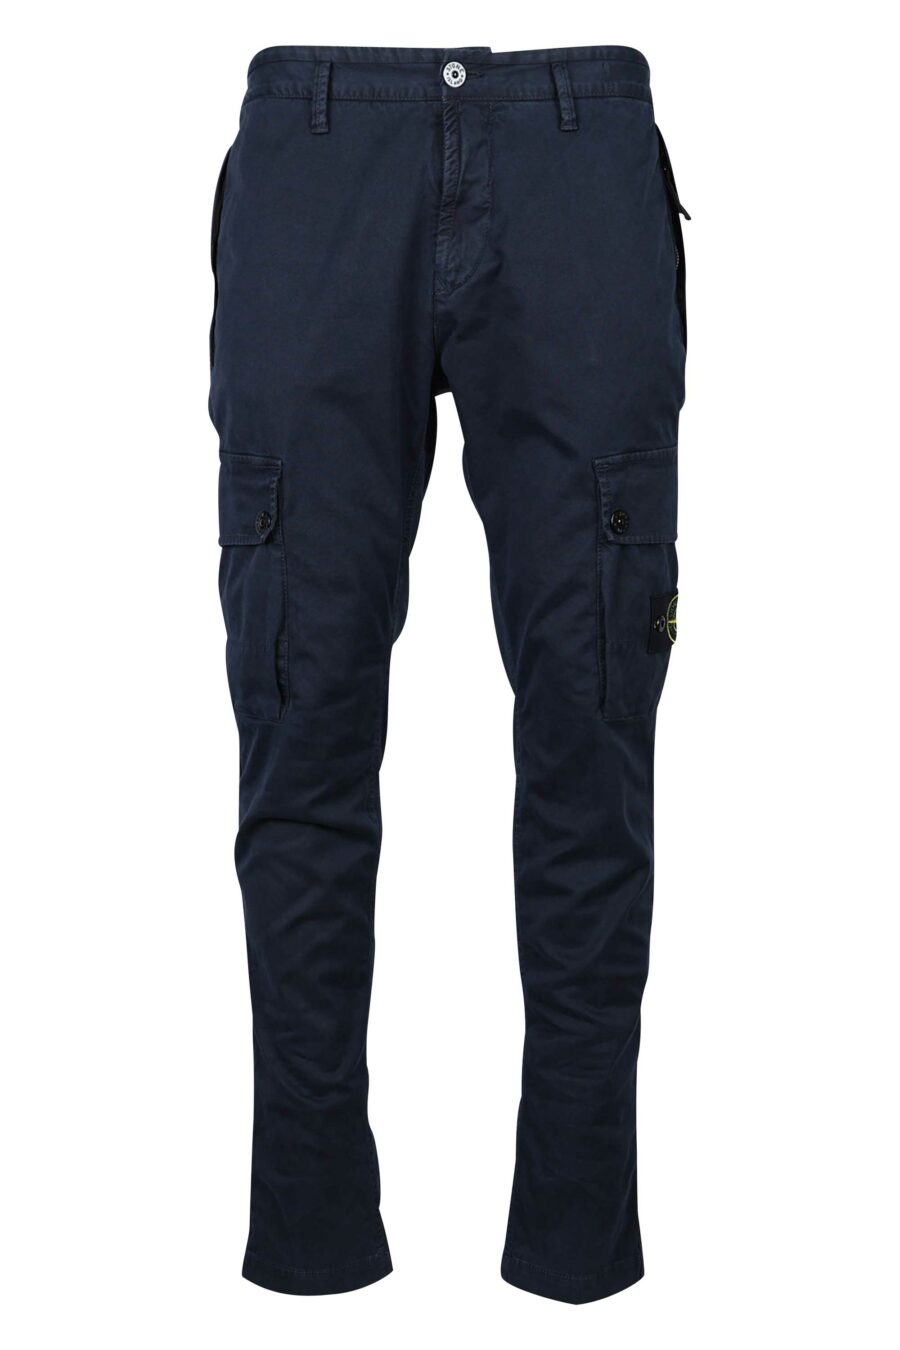 Pantalon slim bleu avec patch logo sur le côté - 8052572735042